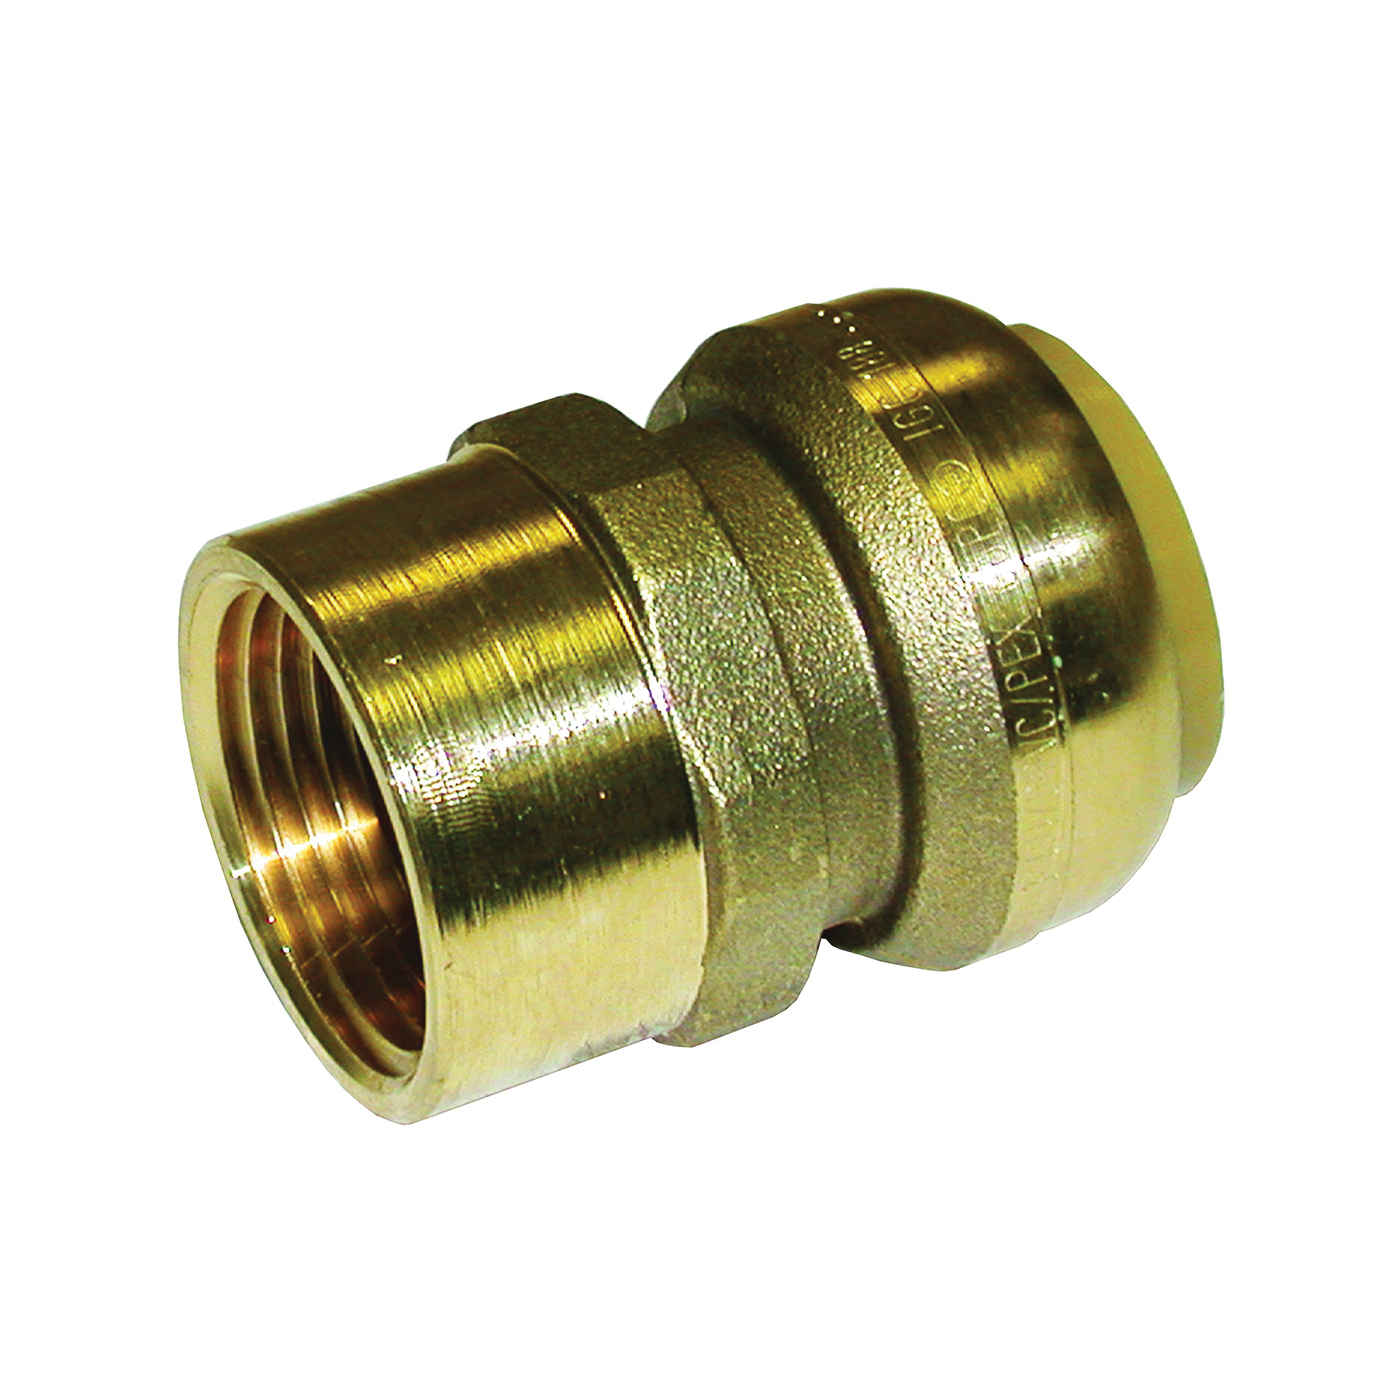 U094LFA Pipe Connector, 1 in, FNPT, Brass, 200 psi Pressure